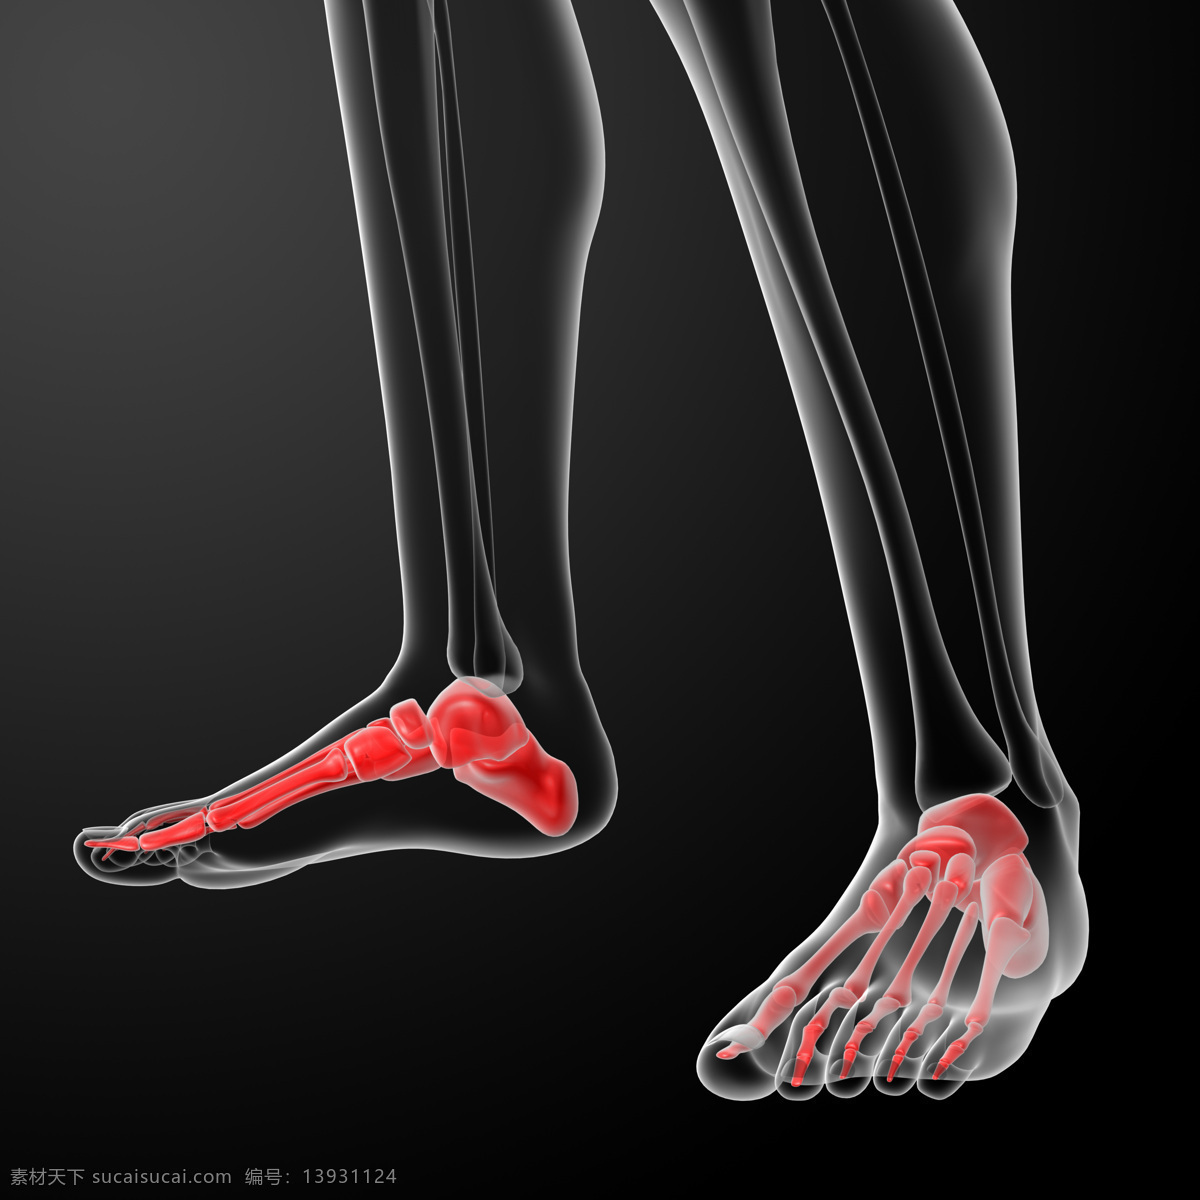 脚掌 肌肉 骨骼 结构 脚掌结构 脚掌肌肉 人体结构 人体骨骼 人体肌肉 人体标本 人体构造 医学标本 科学研究 现代科技